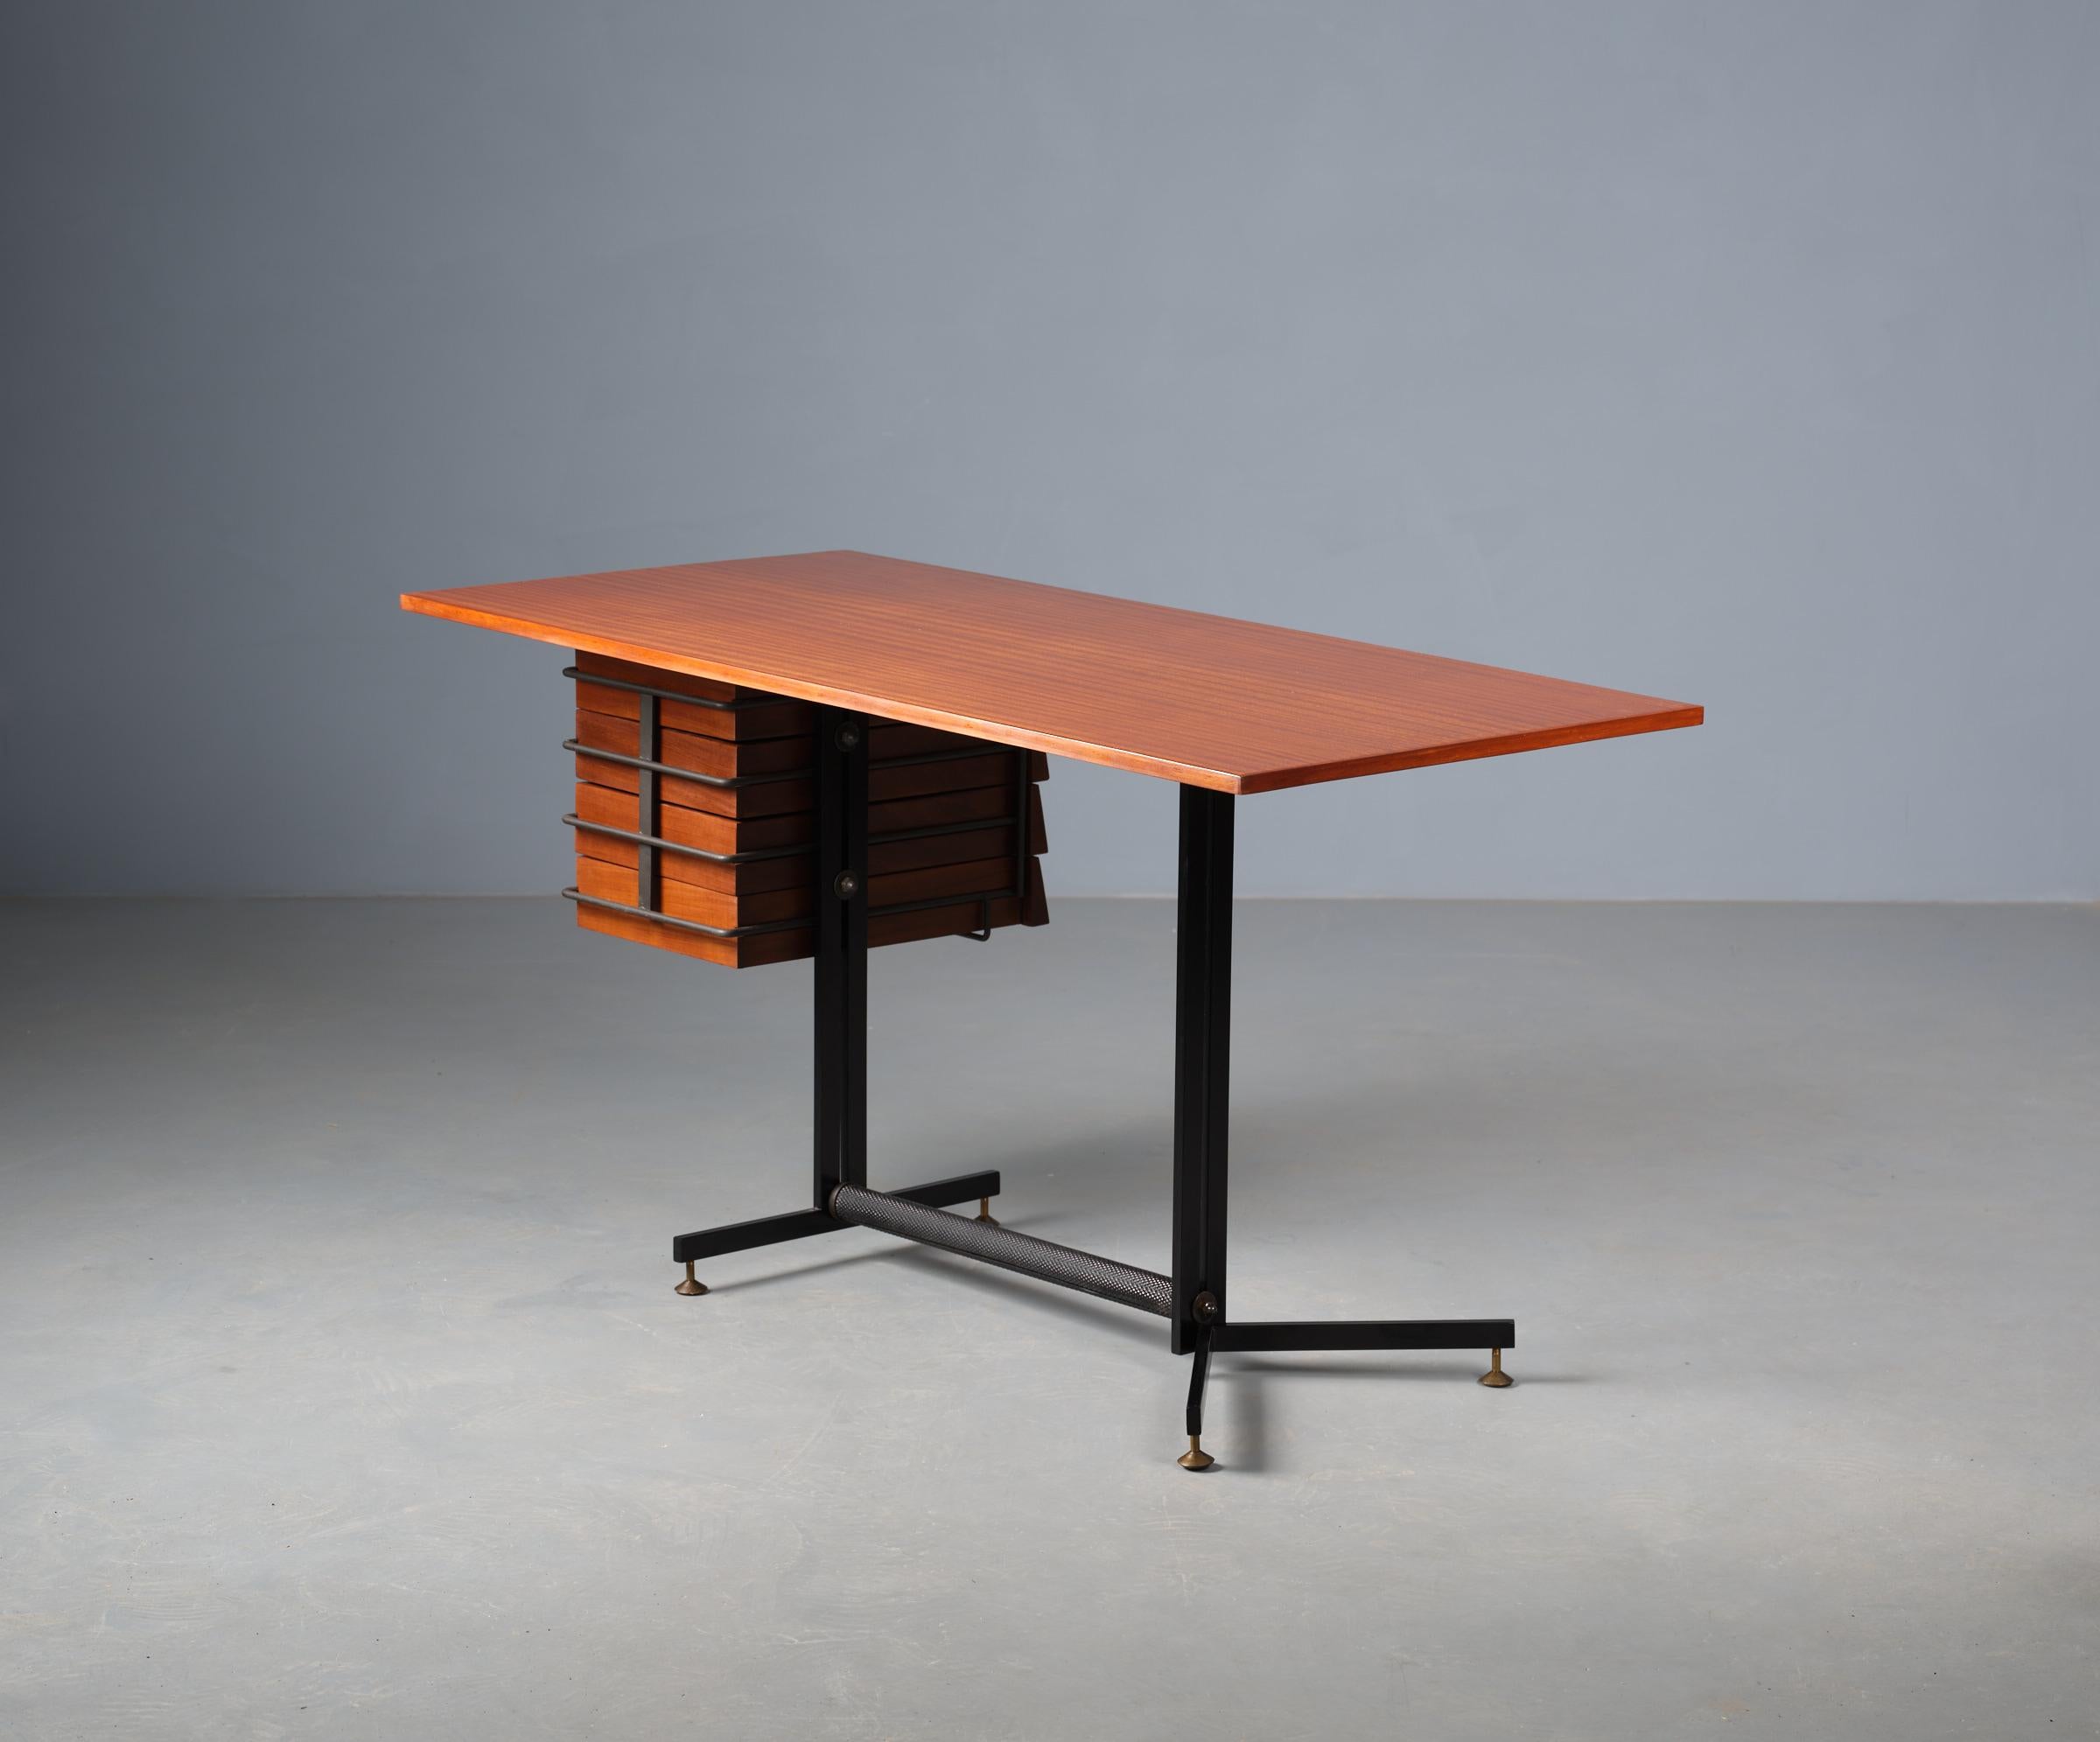 Der restaurierte Vintage-Schreibtisch aus dem Italien der 1950er Jahre ist ein eindrucksvolles Beispiel für das Design-Ethos der Mitte des Jahrhunderts. Dieses aus edlem Teakholz gefertigte Möbelstück mit einem eleganten Rahmen aus schwarz